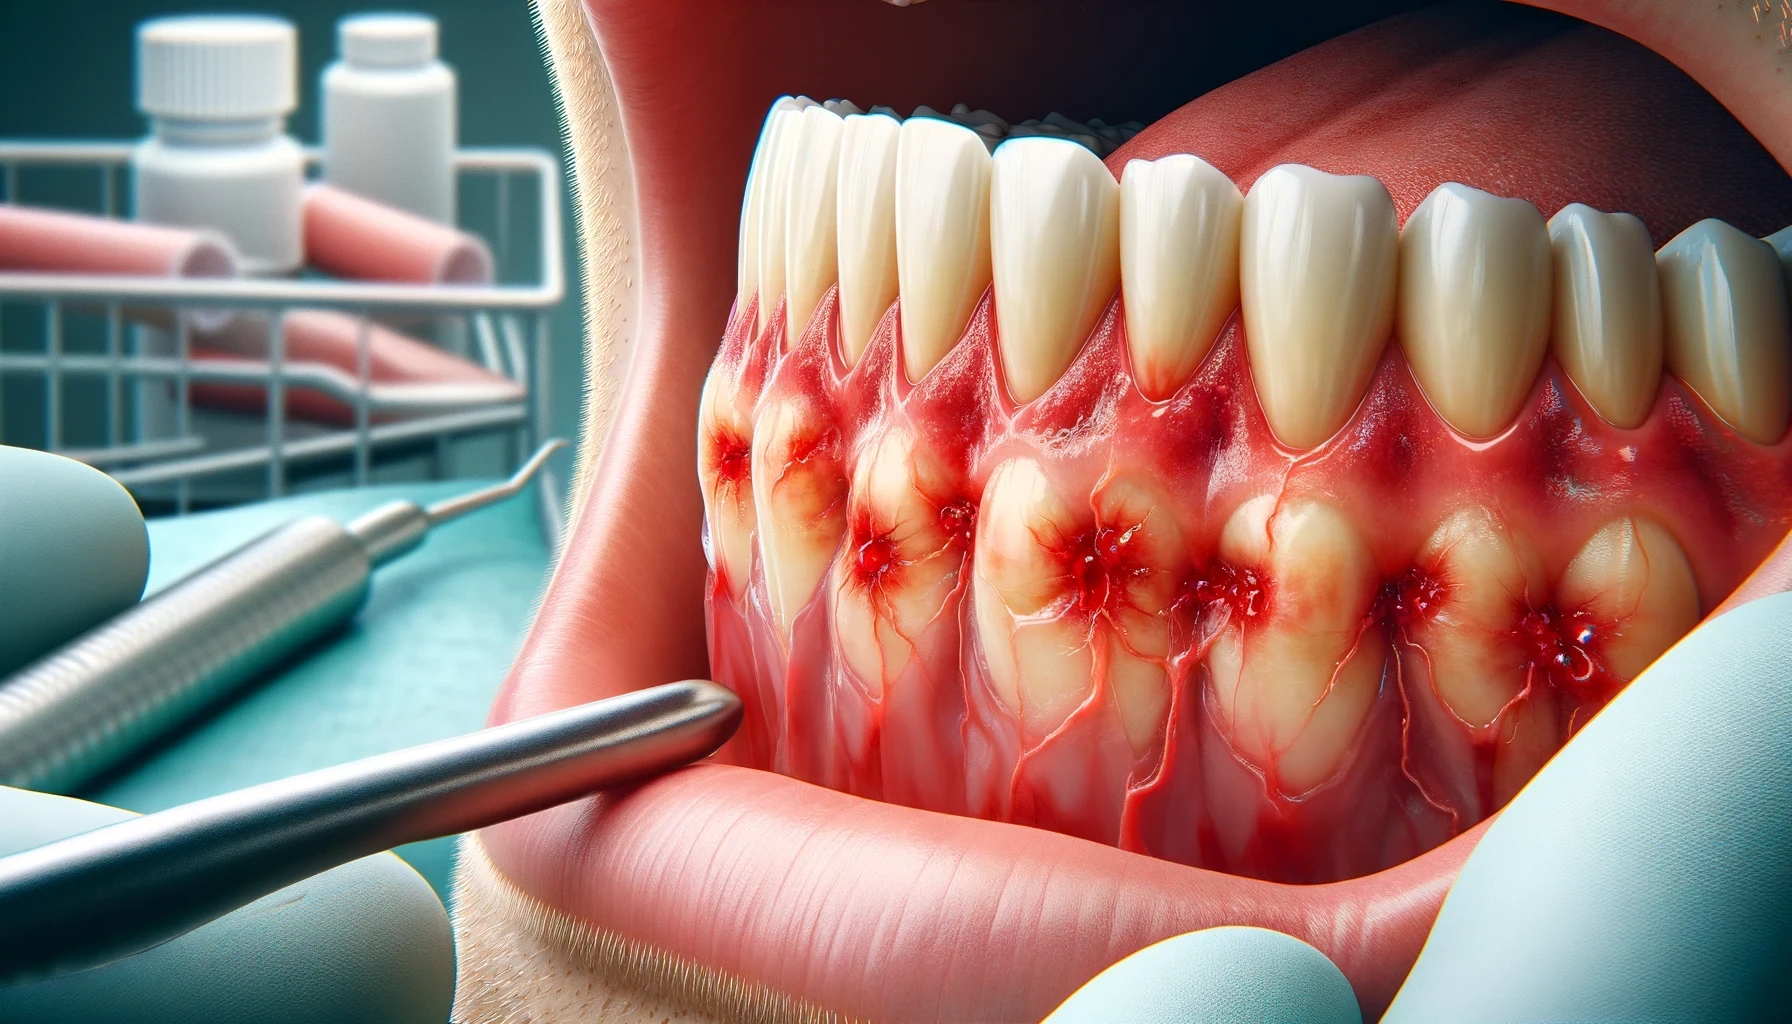 "Nærbilde av betente tannkjøtt med rødhet og hevelse i et tannlegekontor. Tannhelseverktøy er synlige i bakgrunnen."